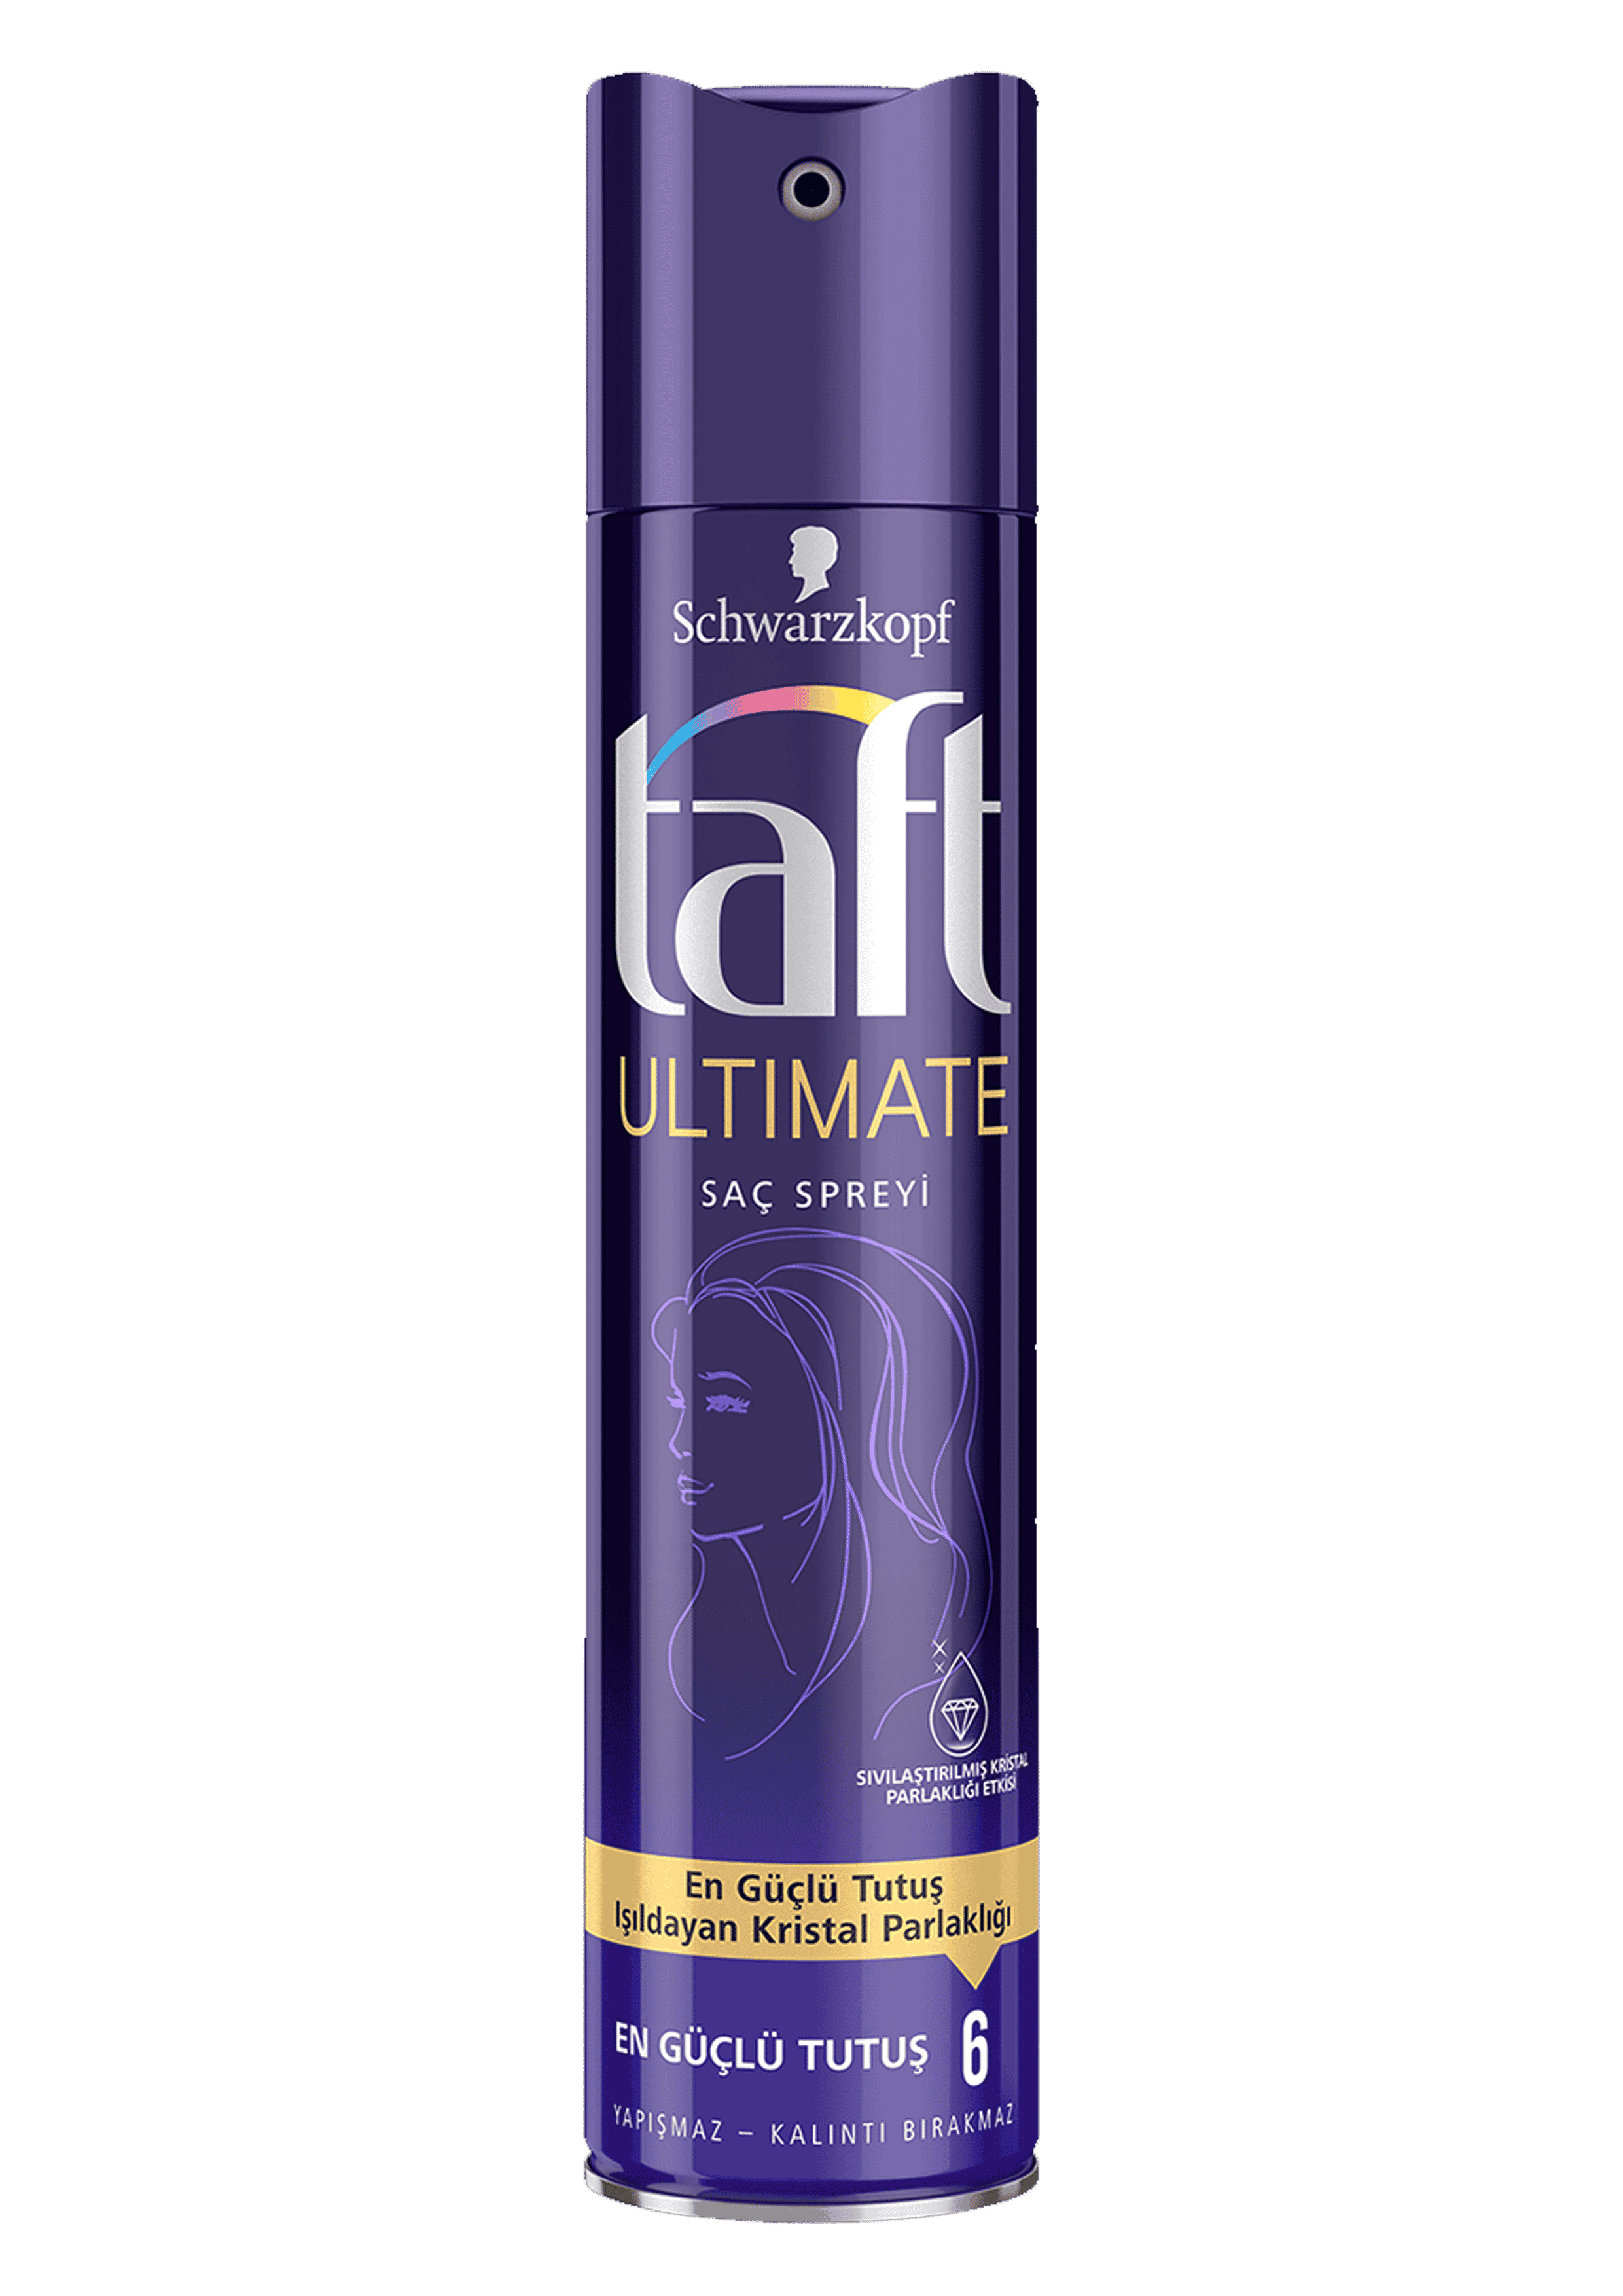 Taft Sprey Ultimate 250 Ml 